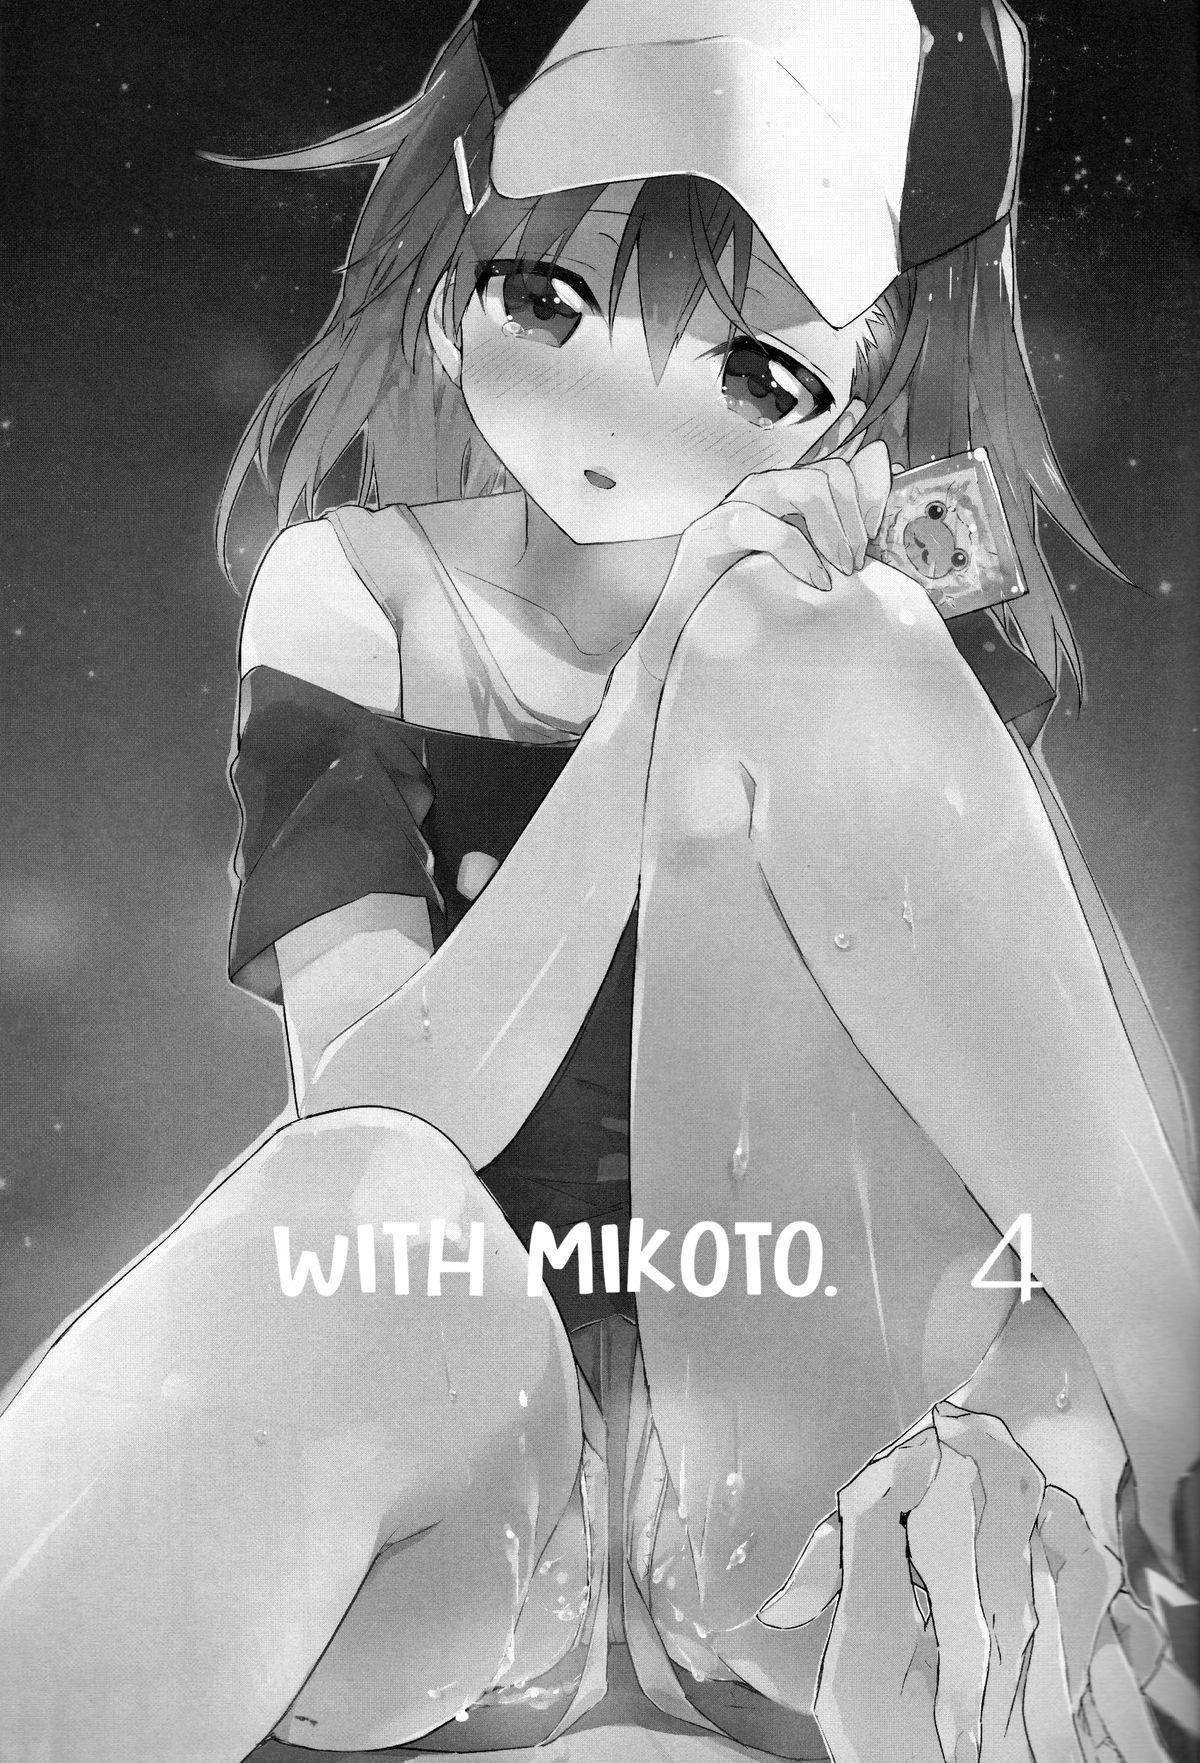 Mikoto to. 4 | With Mikoto. 4 1